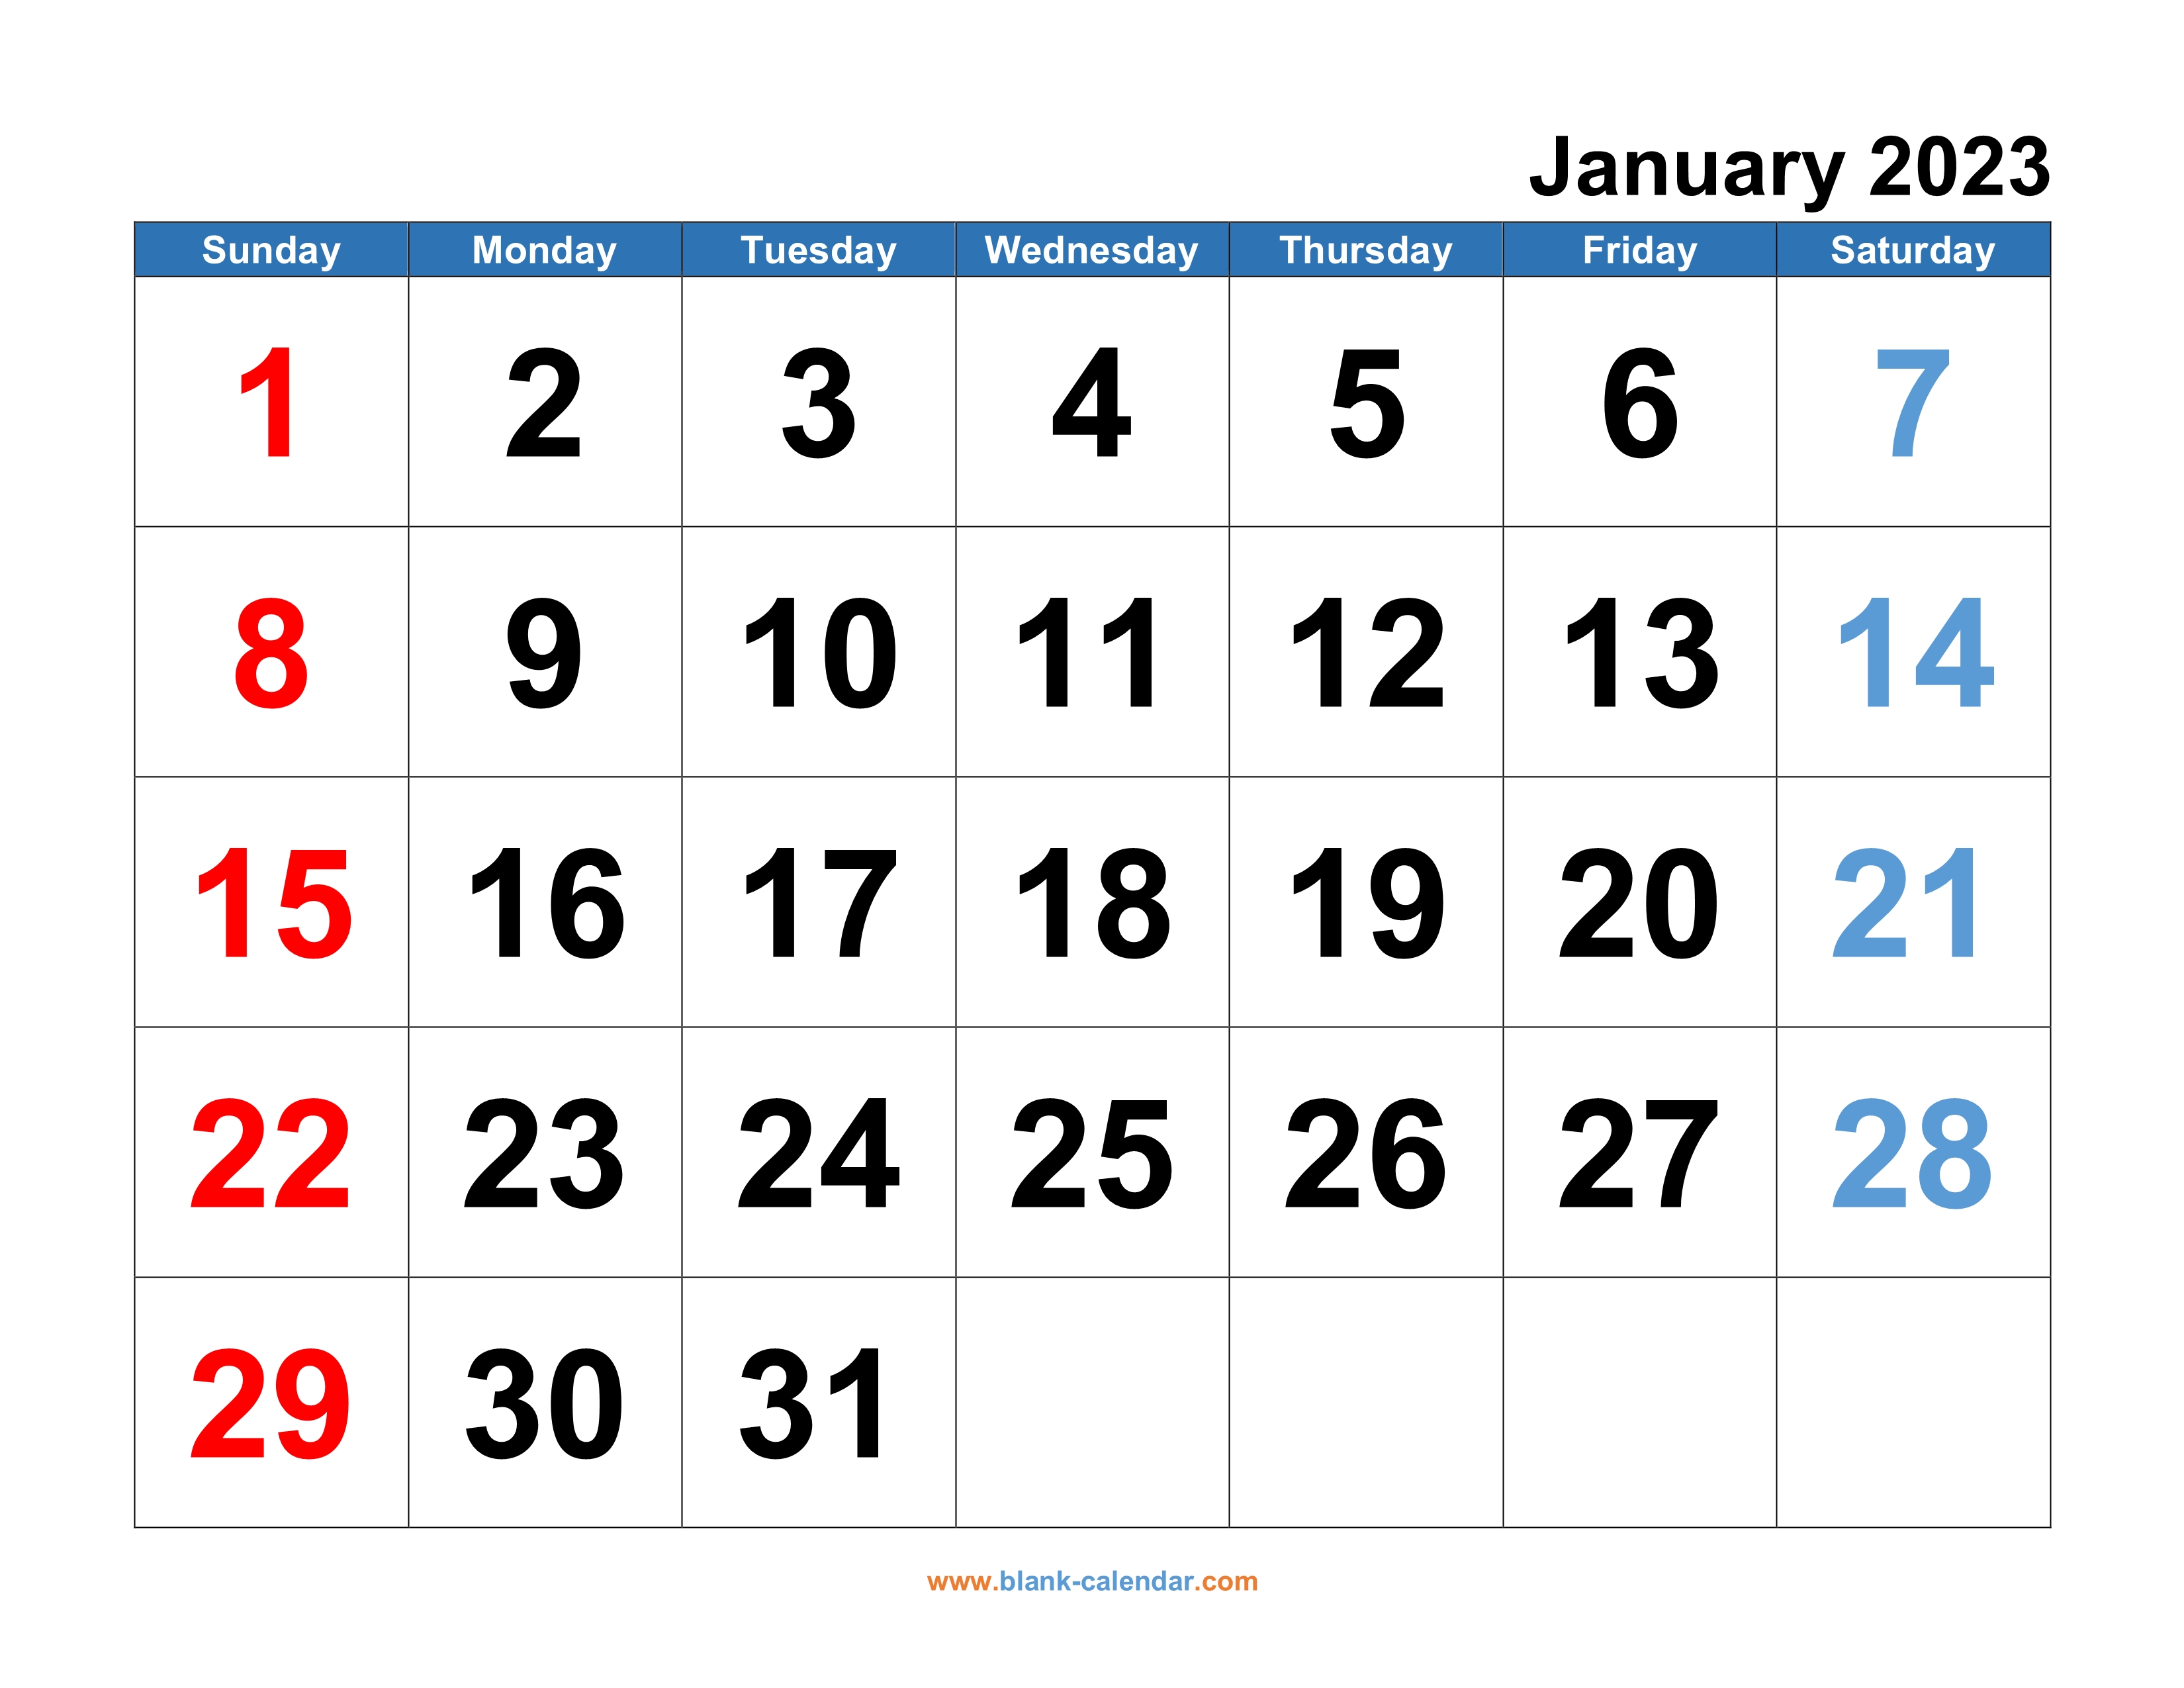 2023-calendar-free-download-get-calendar-2023-update